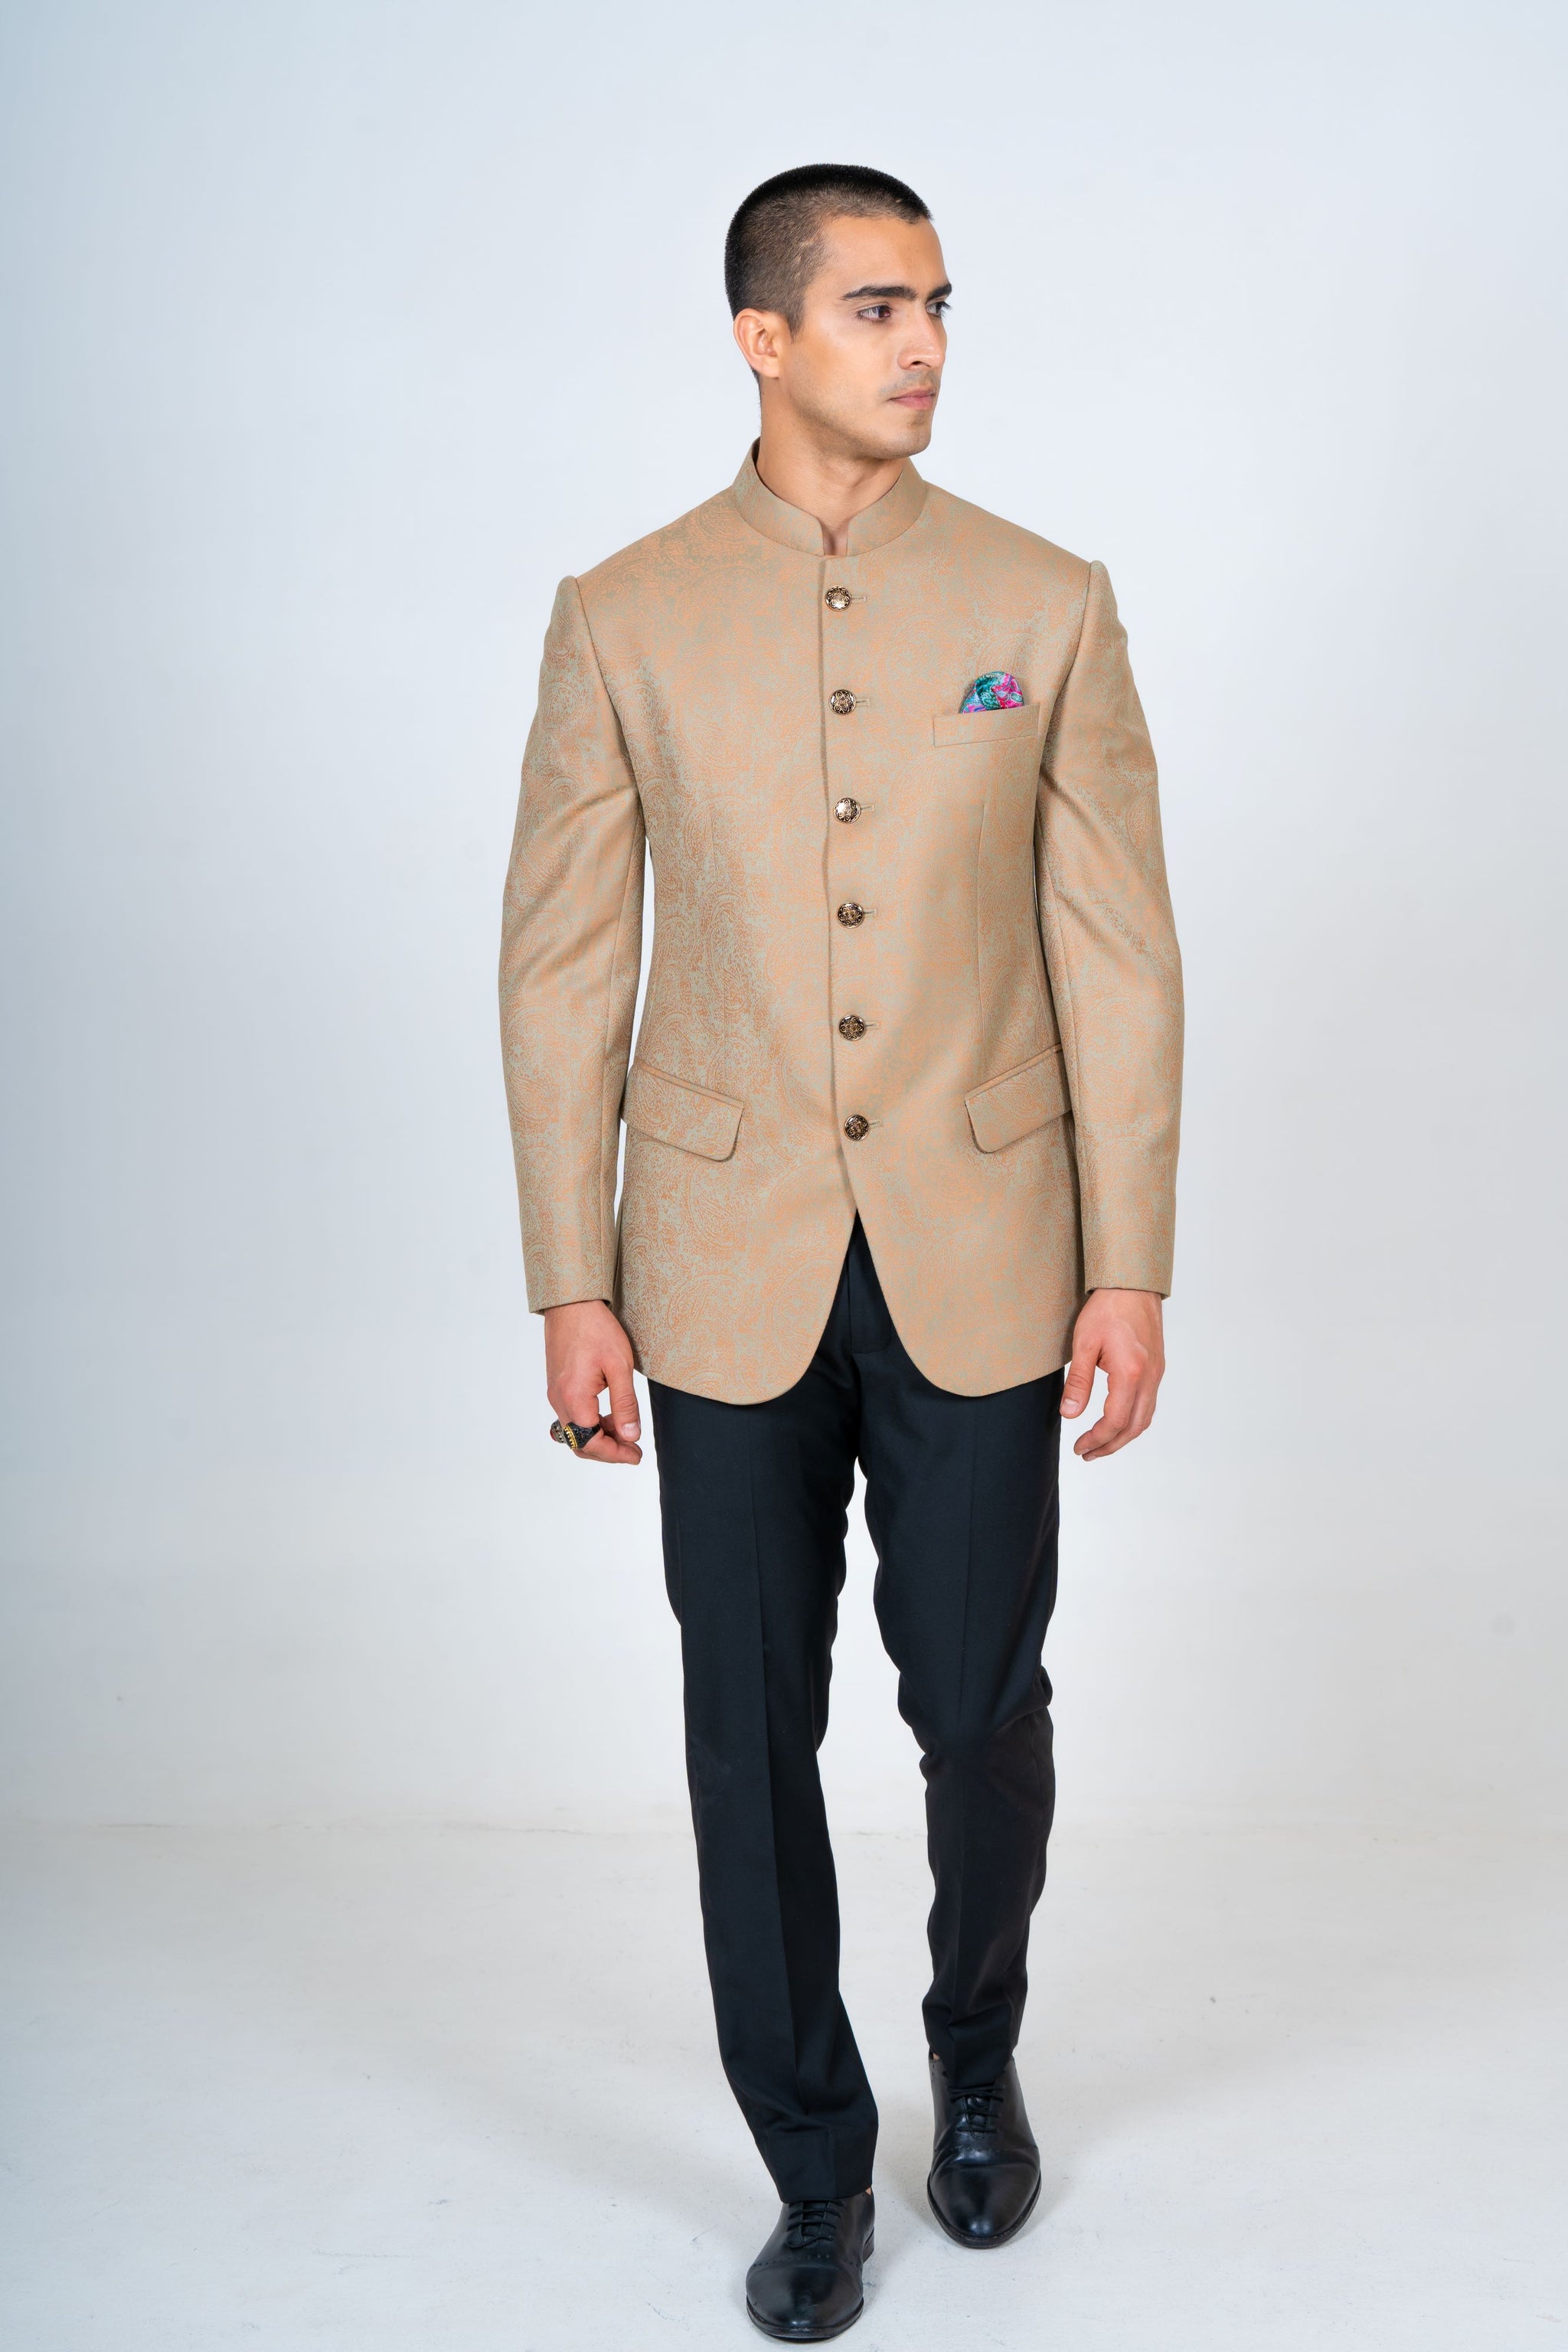 Summer Jacquard Bandhgala Top Suit